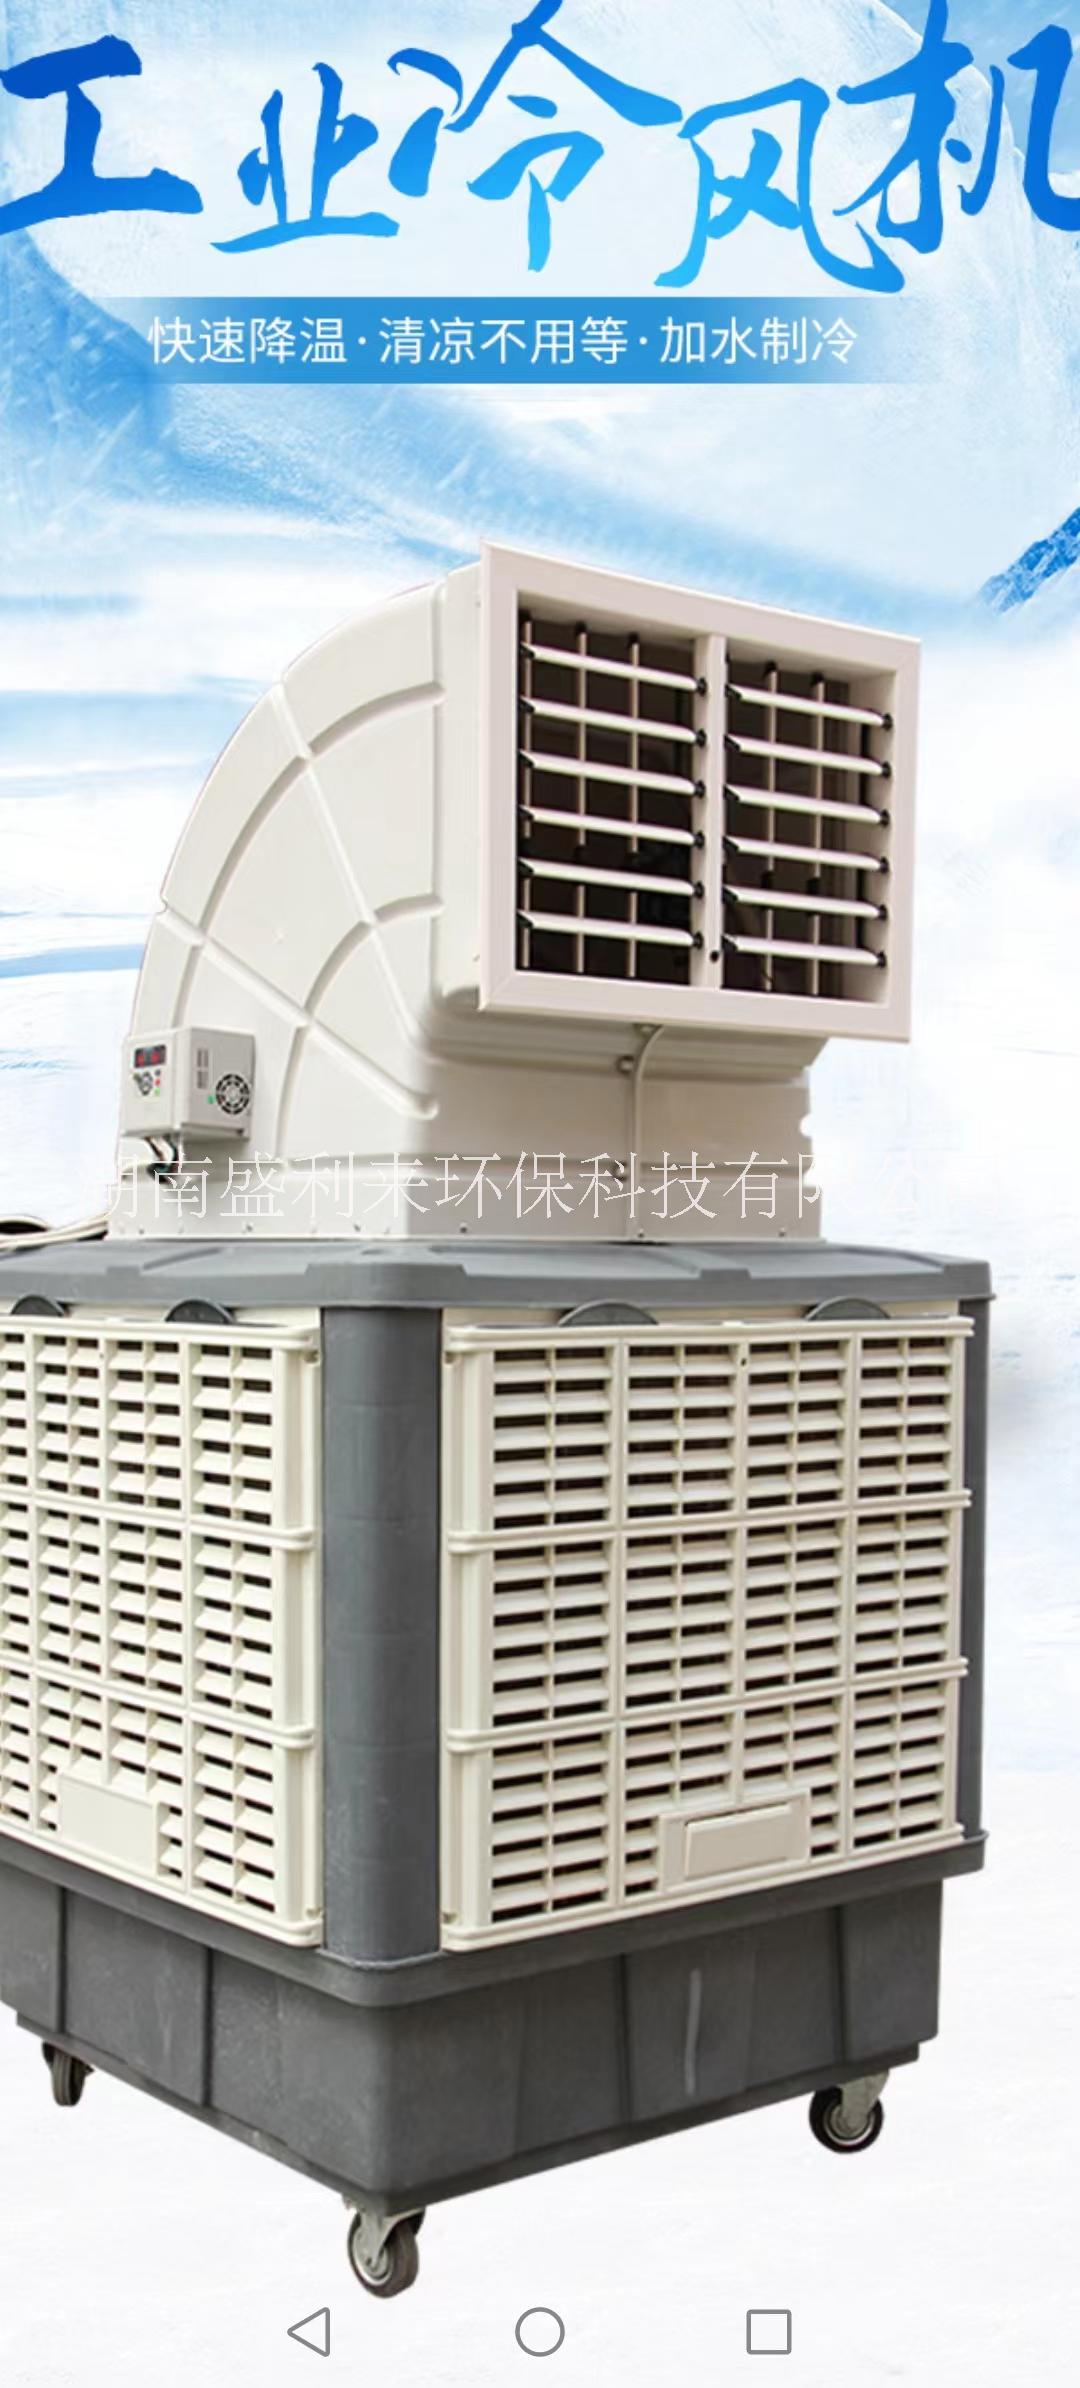 株洲刘阳移动式变频环保空调/蒸发式水冷空调批发